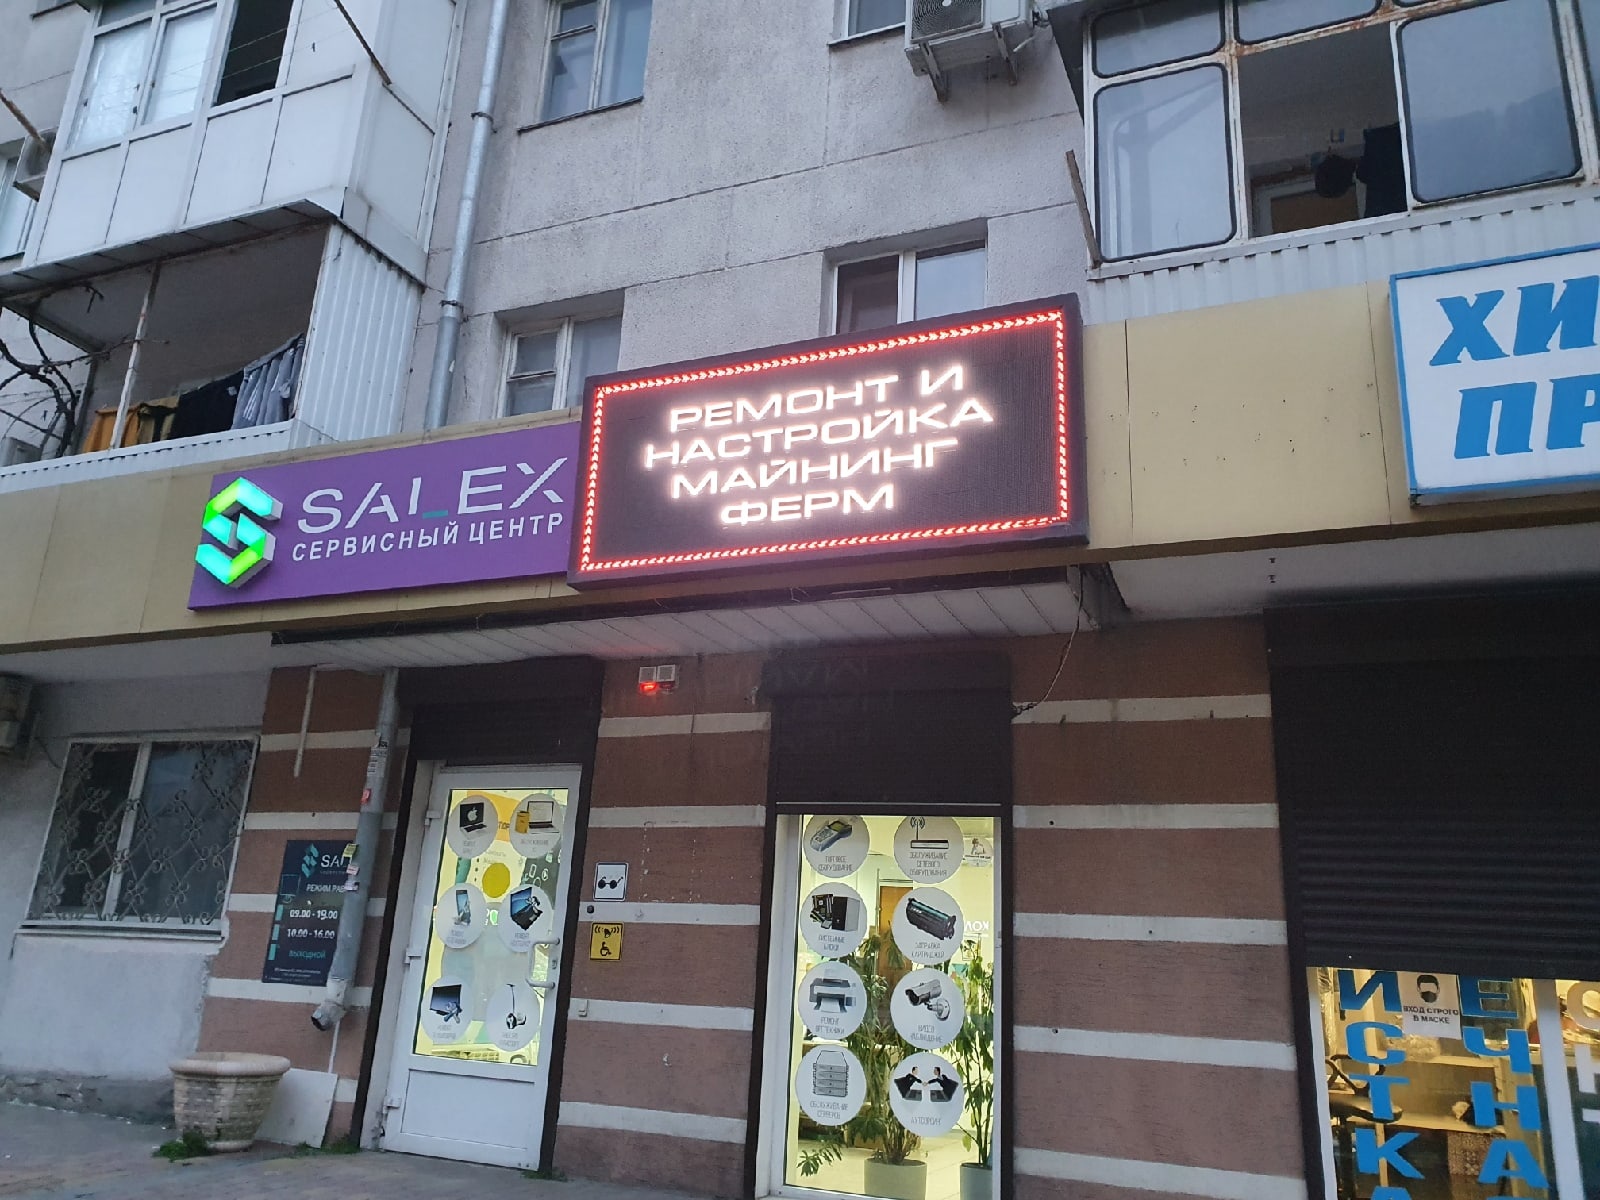 Как рекламировать гей-клуб, с учетом запрета на пропаганду гомосексуализма  в России | Пикабу